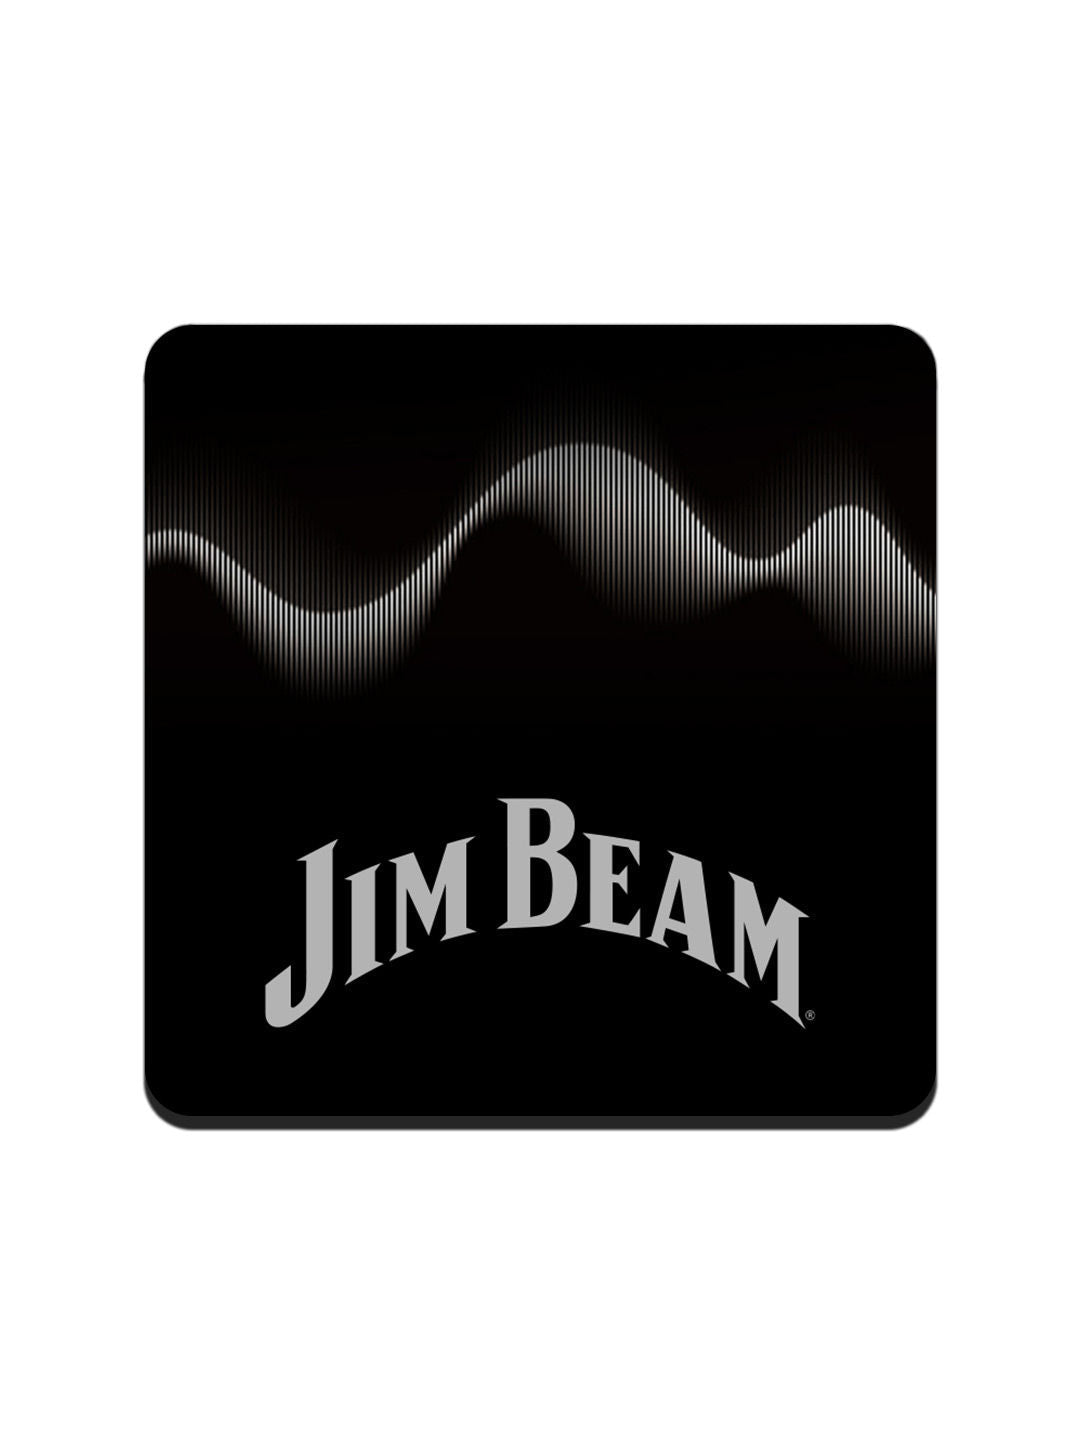 Jim Beam Sound Waves - 10 X 10 (cm) Coasters -Celfie Design - India - www.superherotoystore.com